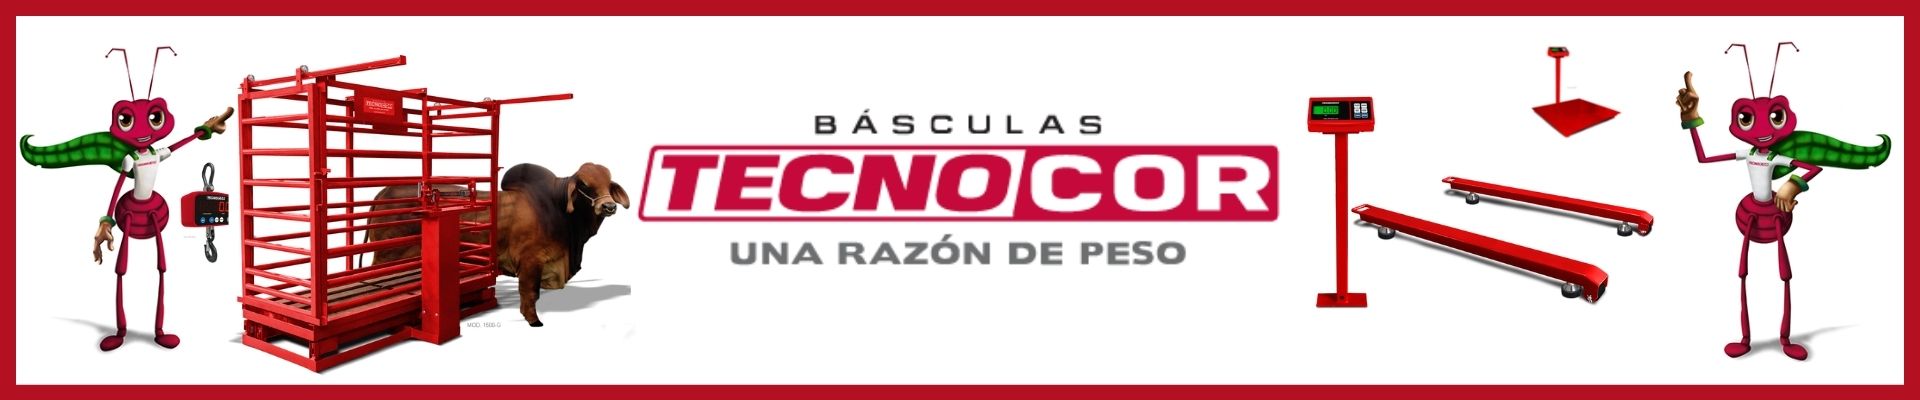 Banner Basculas Tecnocor